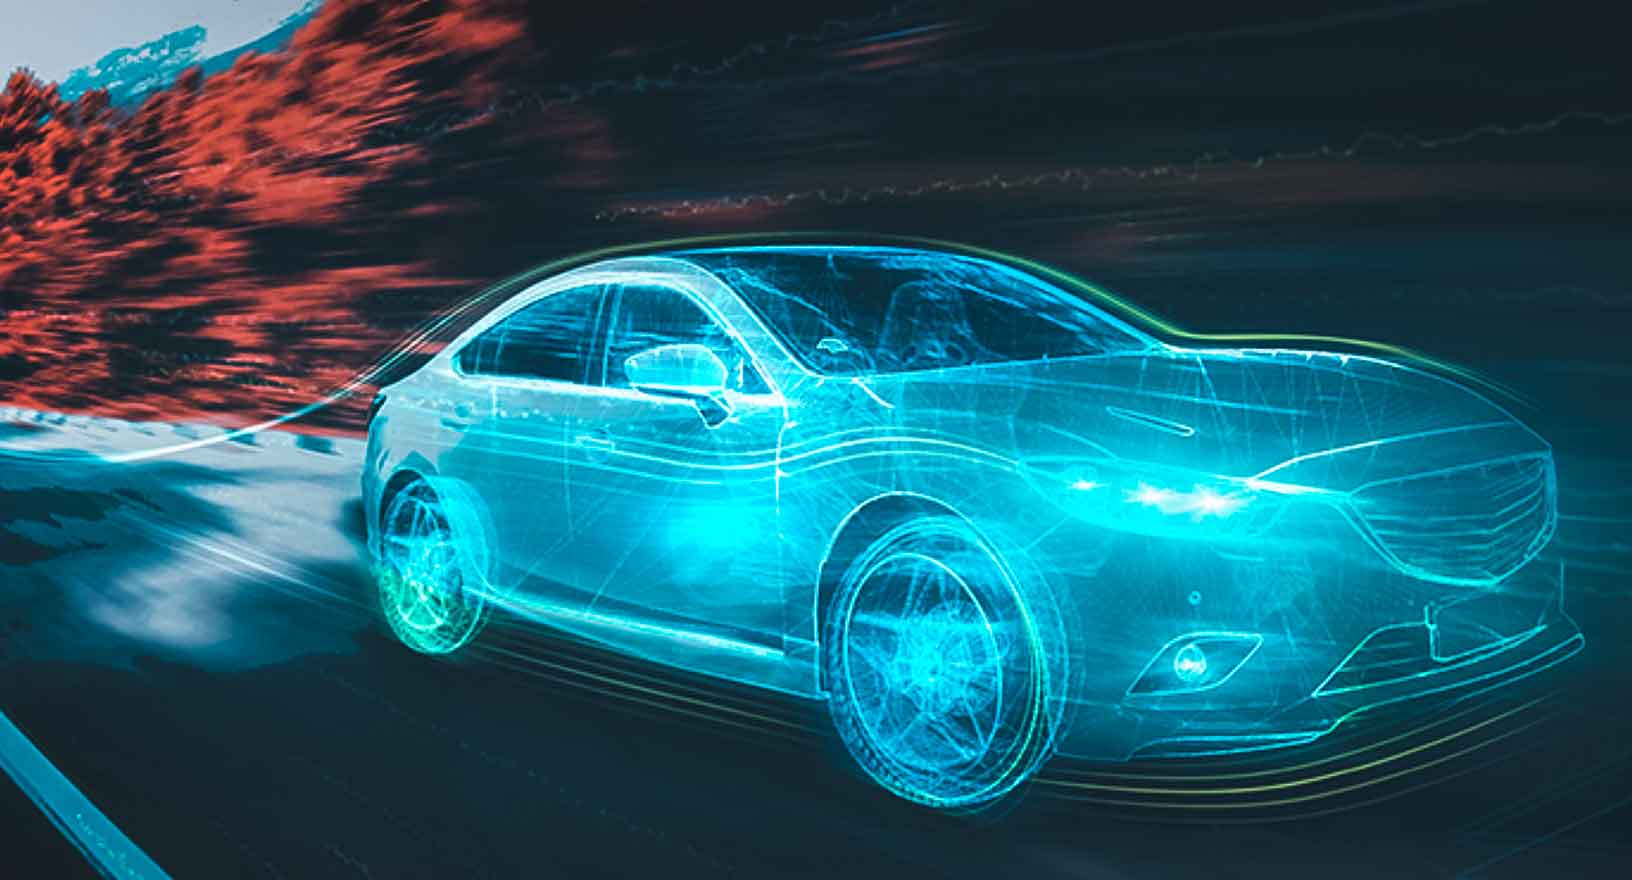 Auto auf Autobahn mit leuchtenden digitalen Umrissen